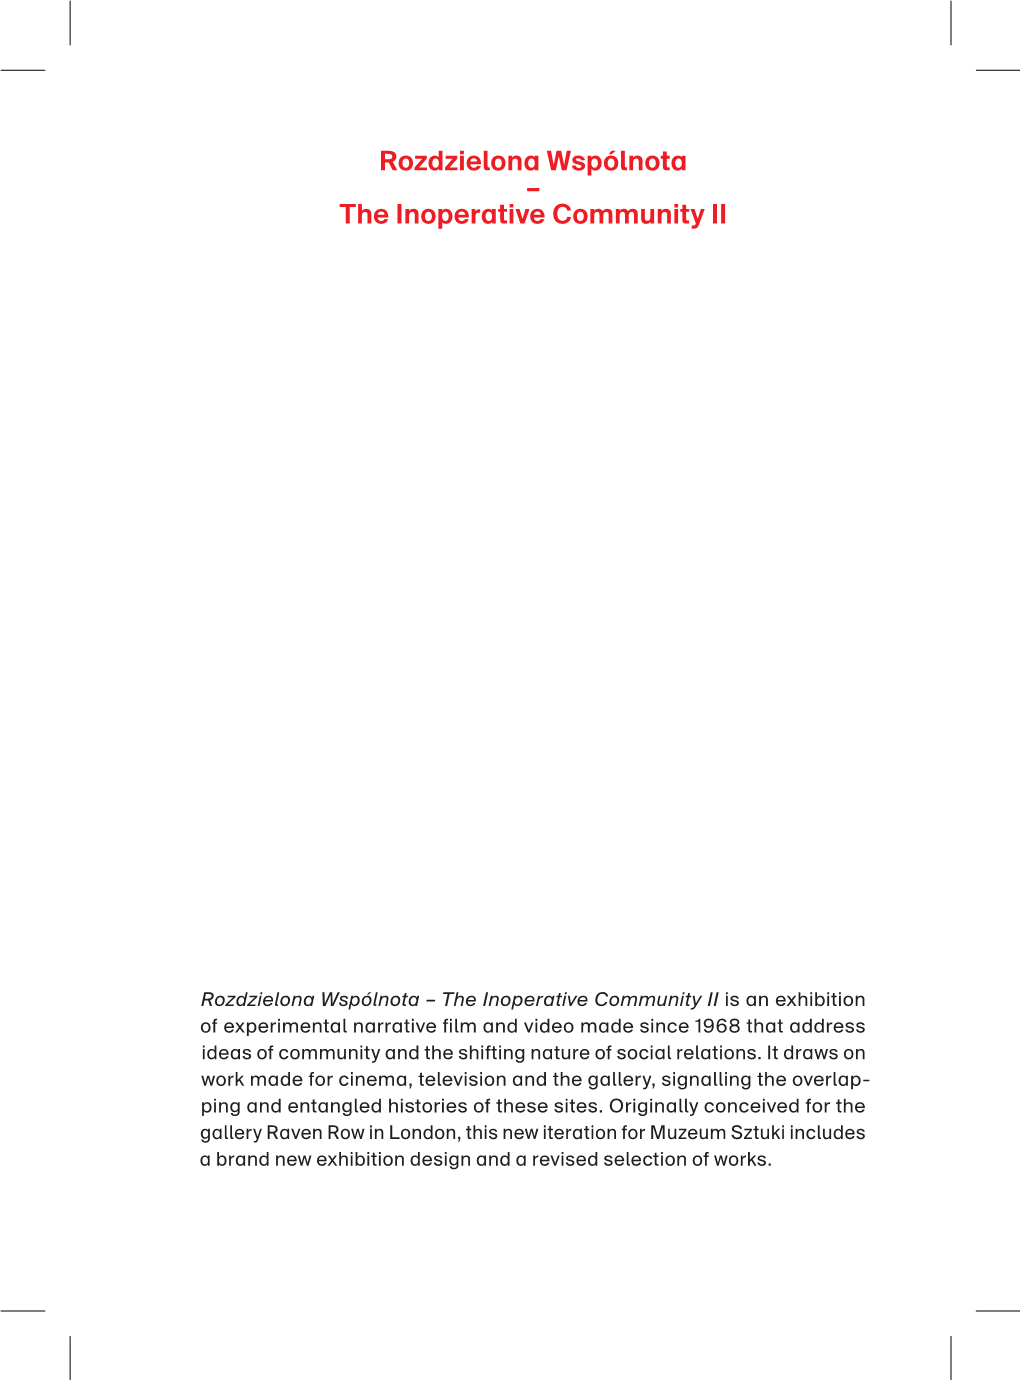 Rozdzielona Wspólnota – the Inoperative Community II